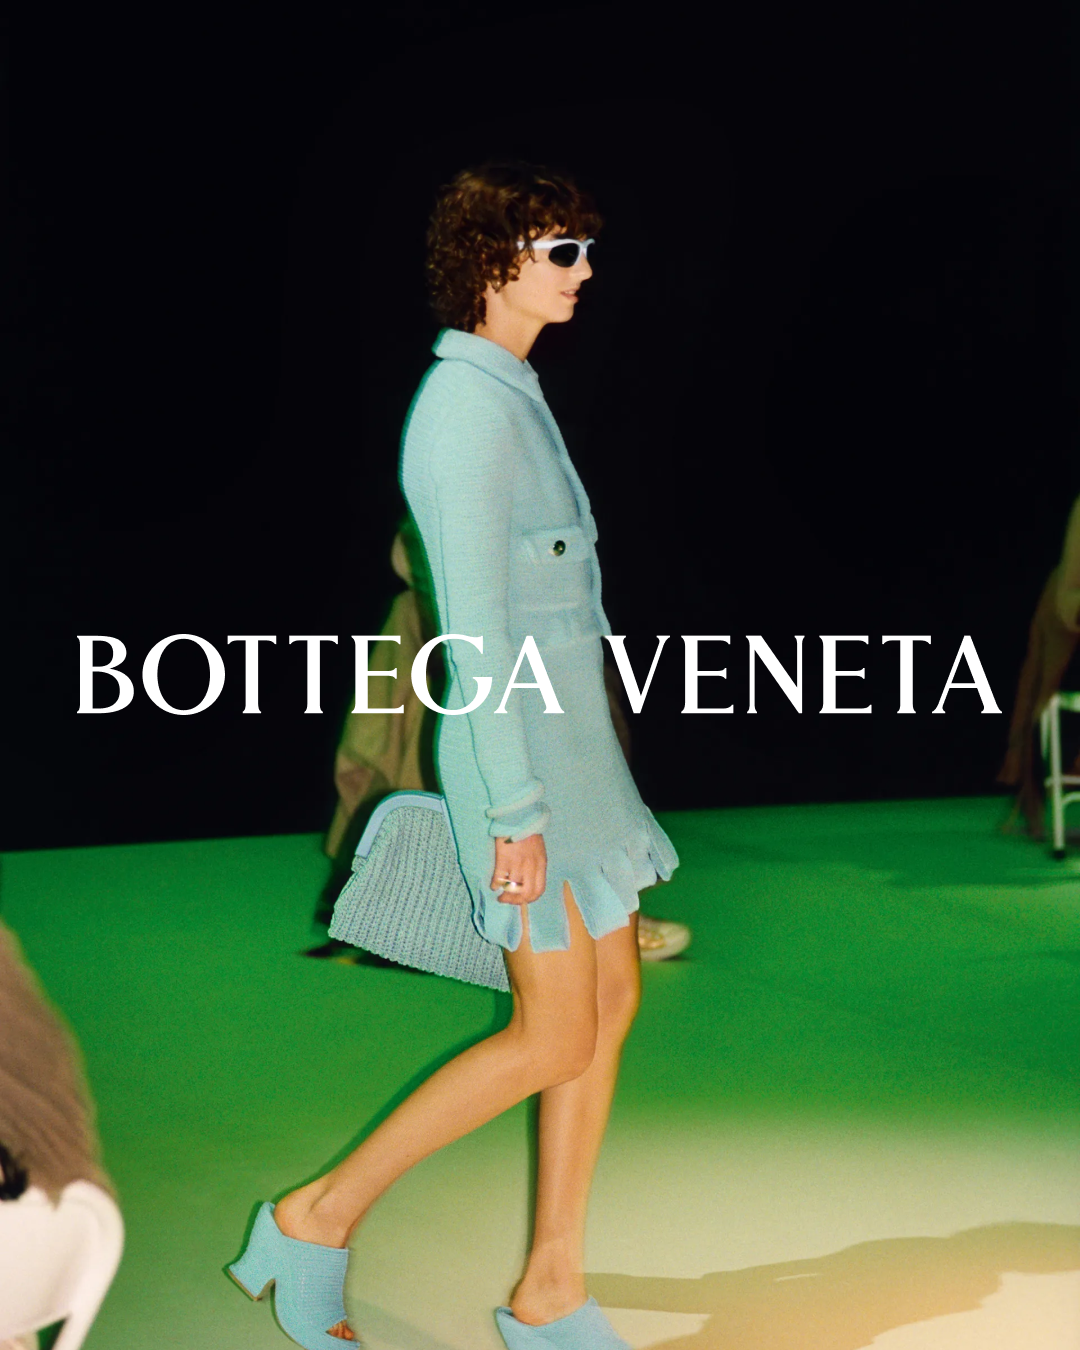 보테가 베네타(bottega veneta)와 다니엘 리